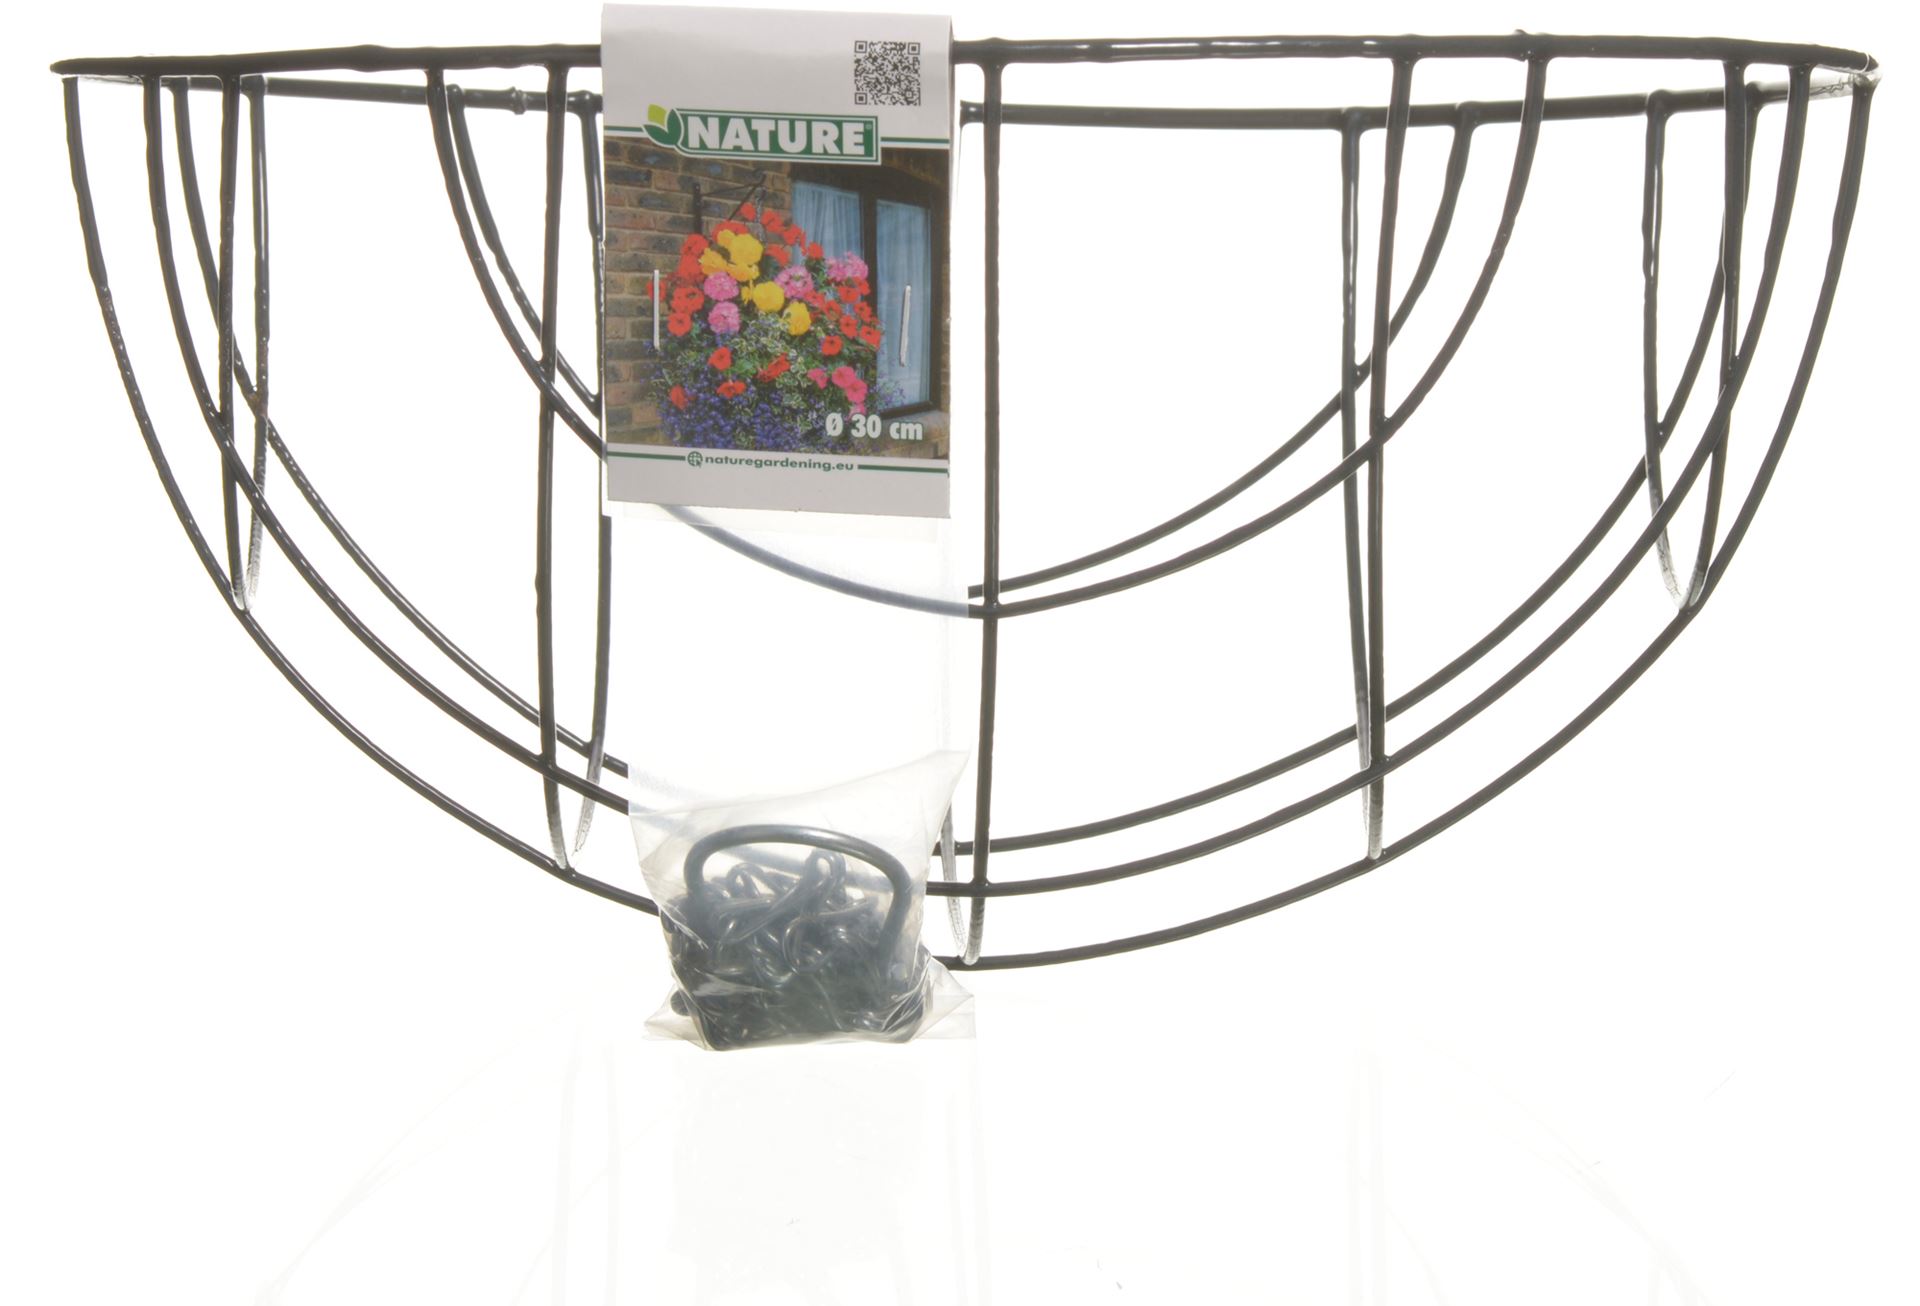 Hanging-basket-metaaldraad-grijs-geepoxeerd-incl-ketting-H16x-30cm